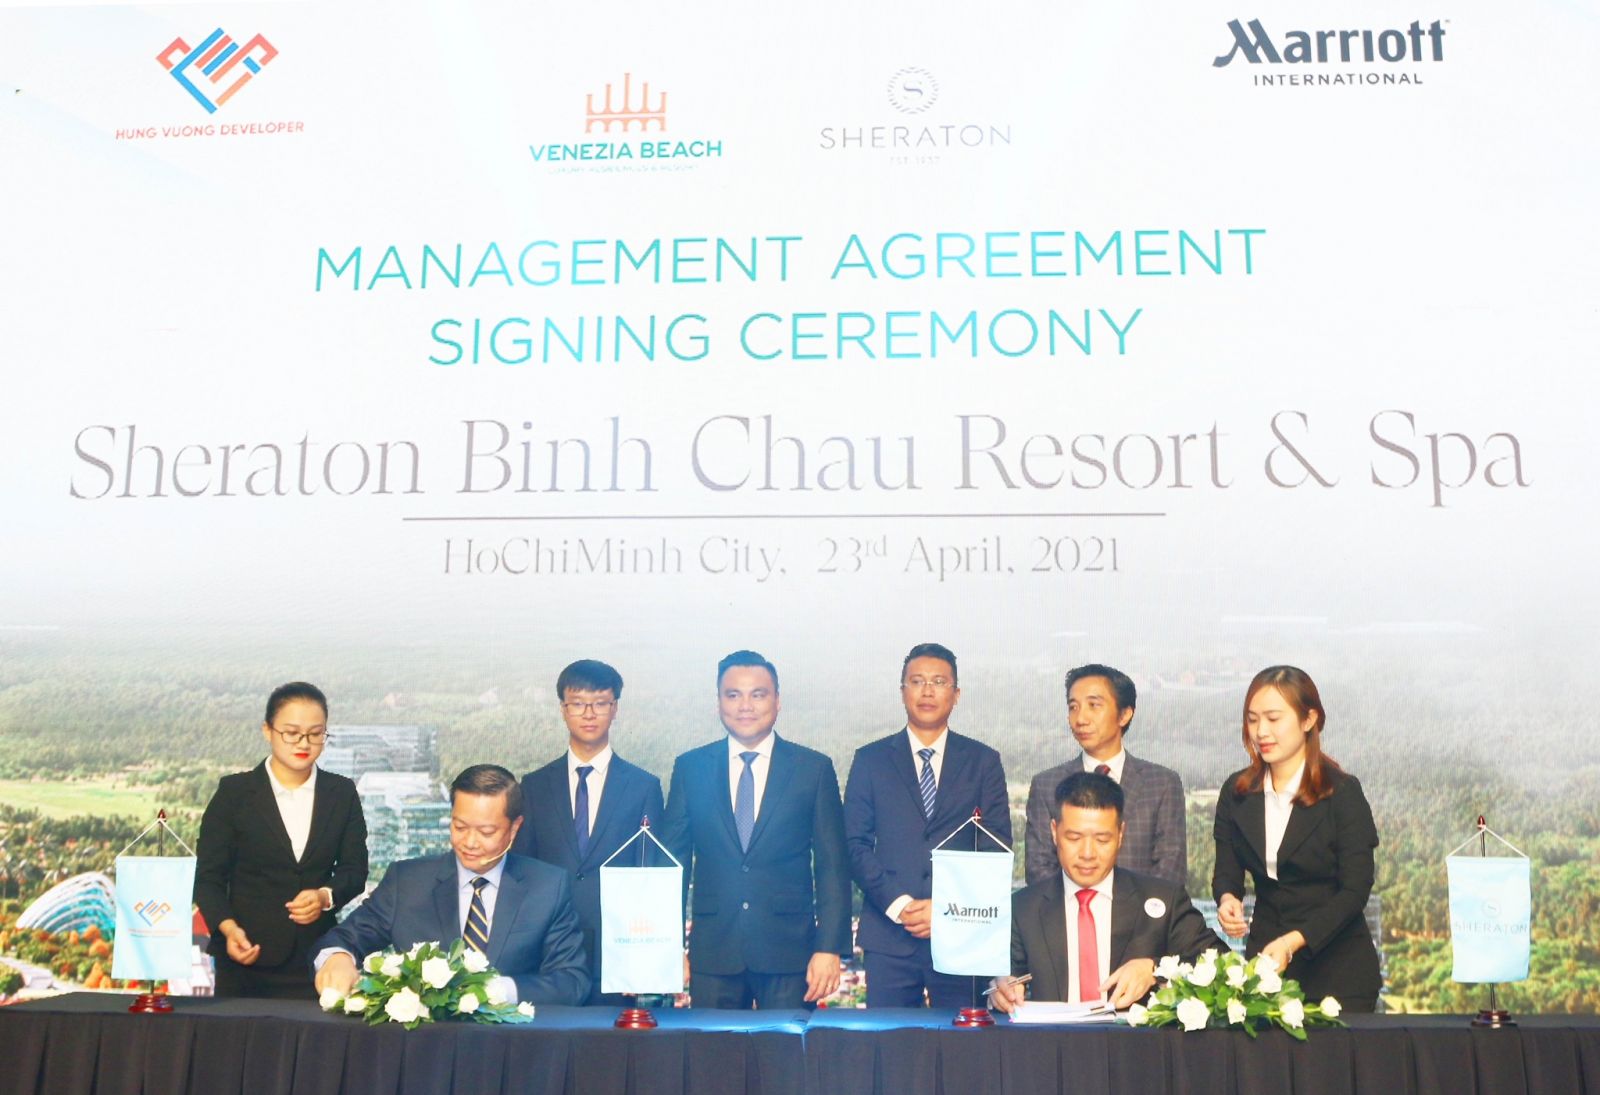 Nhà phát triển Hưng Vượng Developer đã tạo nên bước ngoặt lớn trên thị trường BĐS nghỉ dưỡng khi ký kết hợp tác với tập đoàn quản lý khách sạn lớn nhất thế giới Marriott International